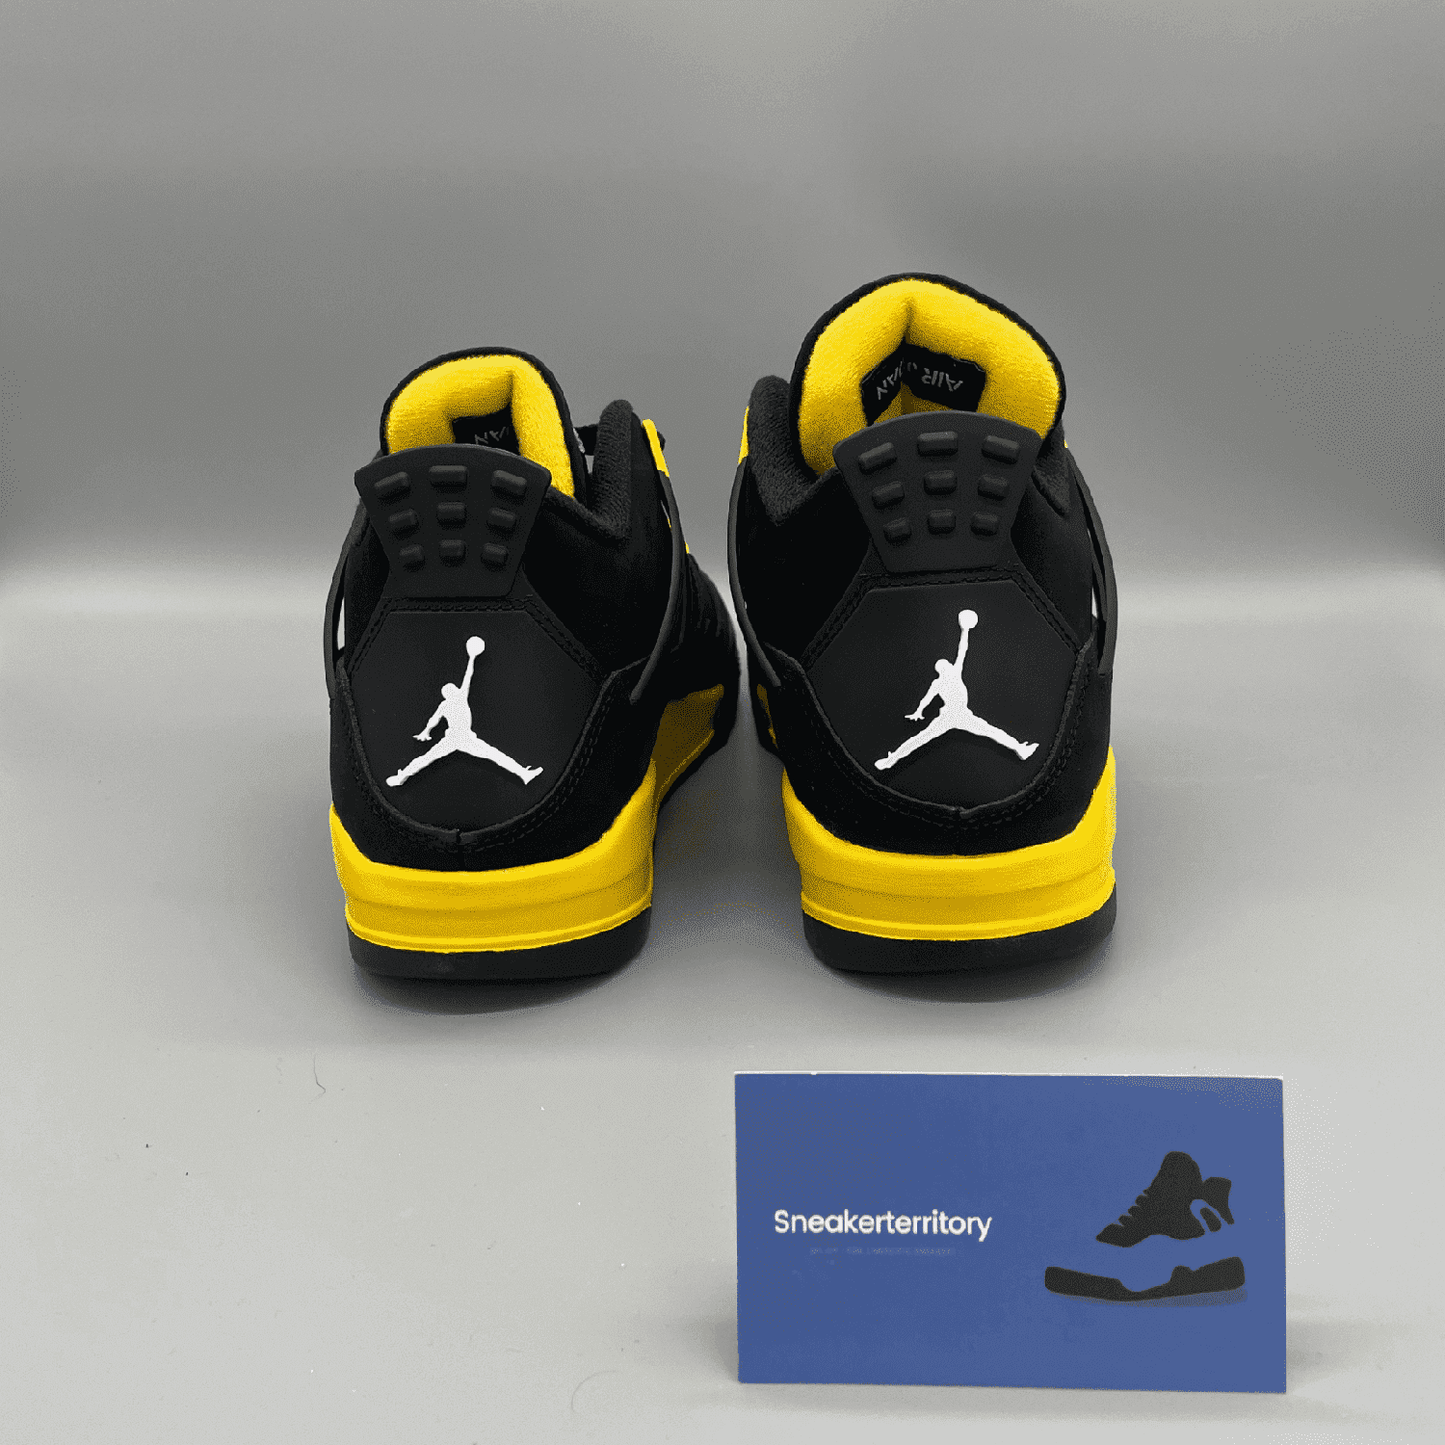 Air Jordan 4 Thunder - Sneakerterritory; Sneaker Territory 3